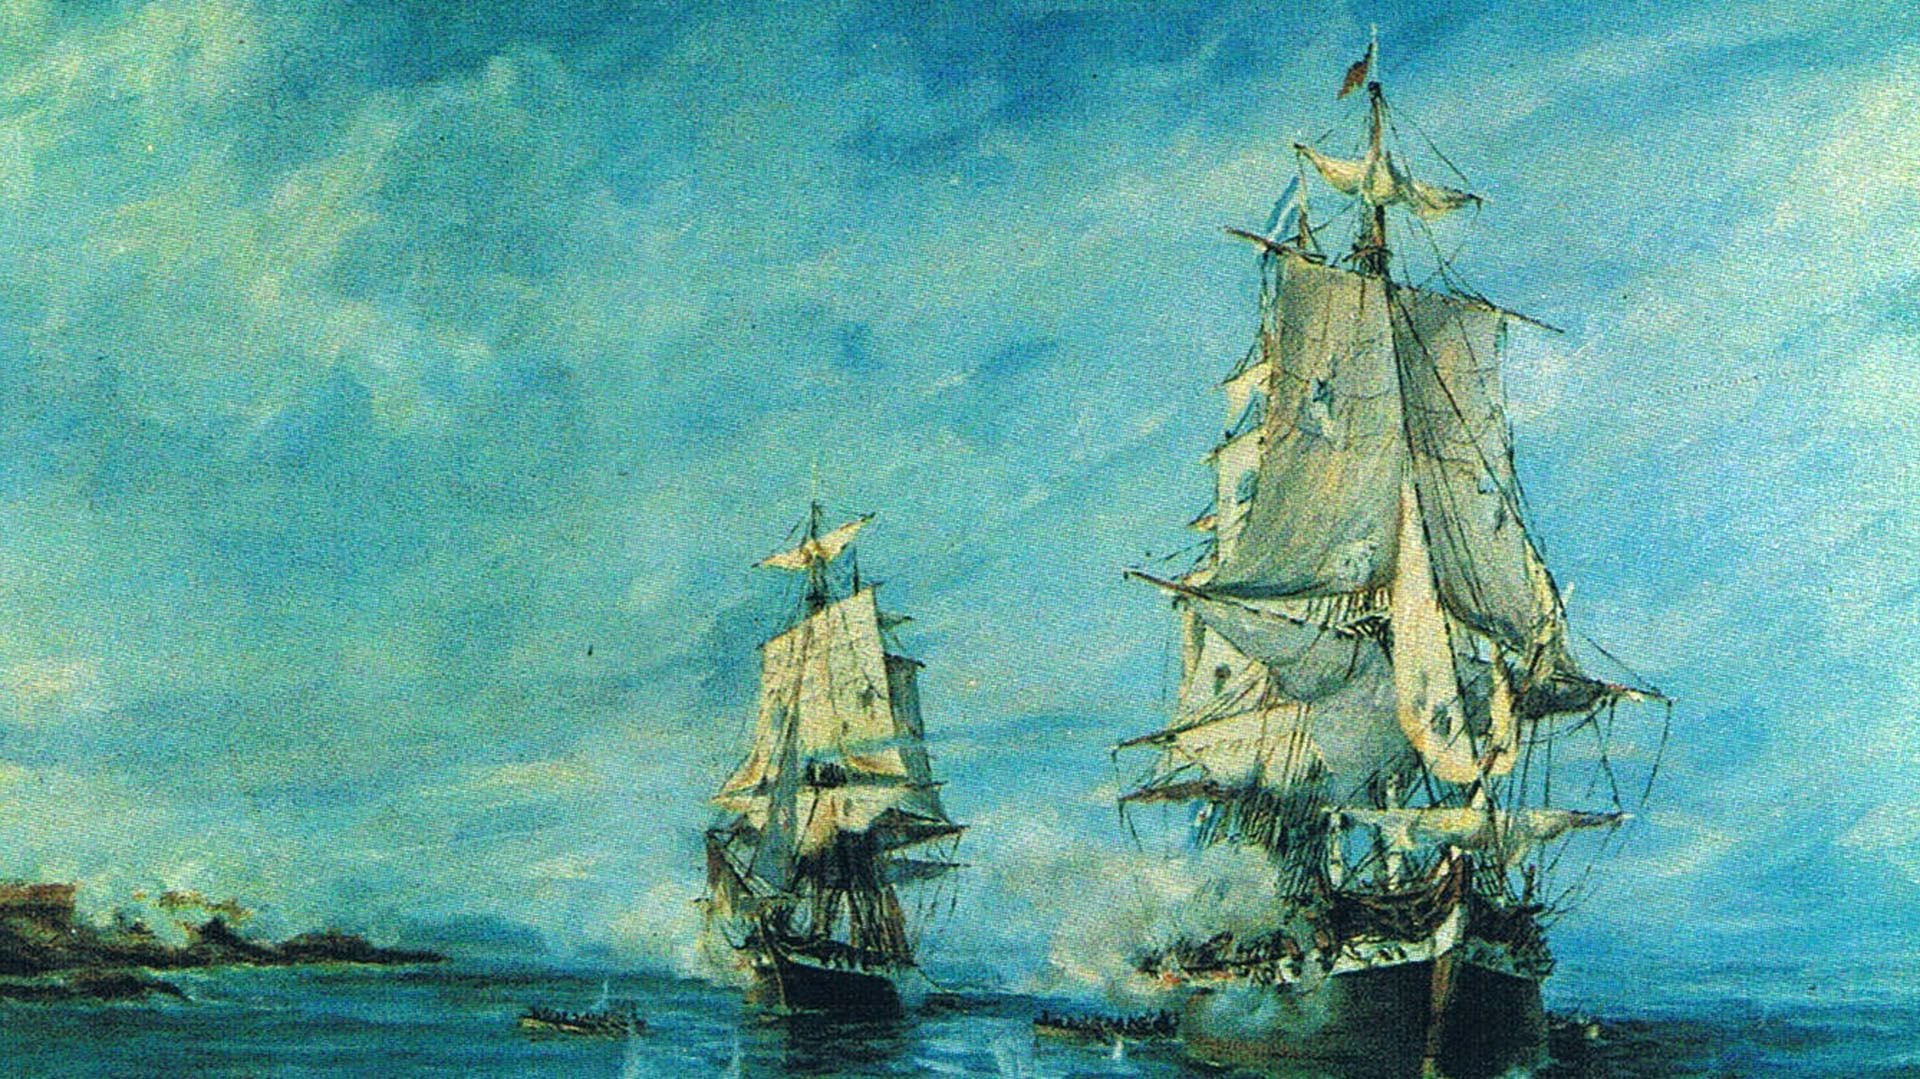 El corsario intentó tomar Monterrey bombardeando el fuerte, pero fue rechazado. 